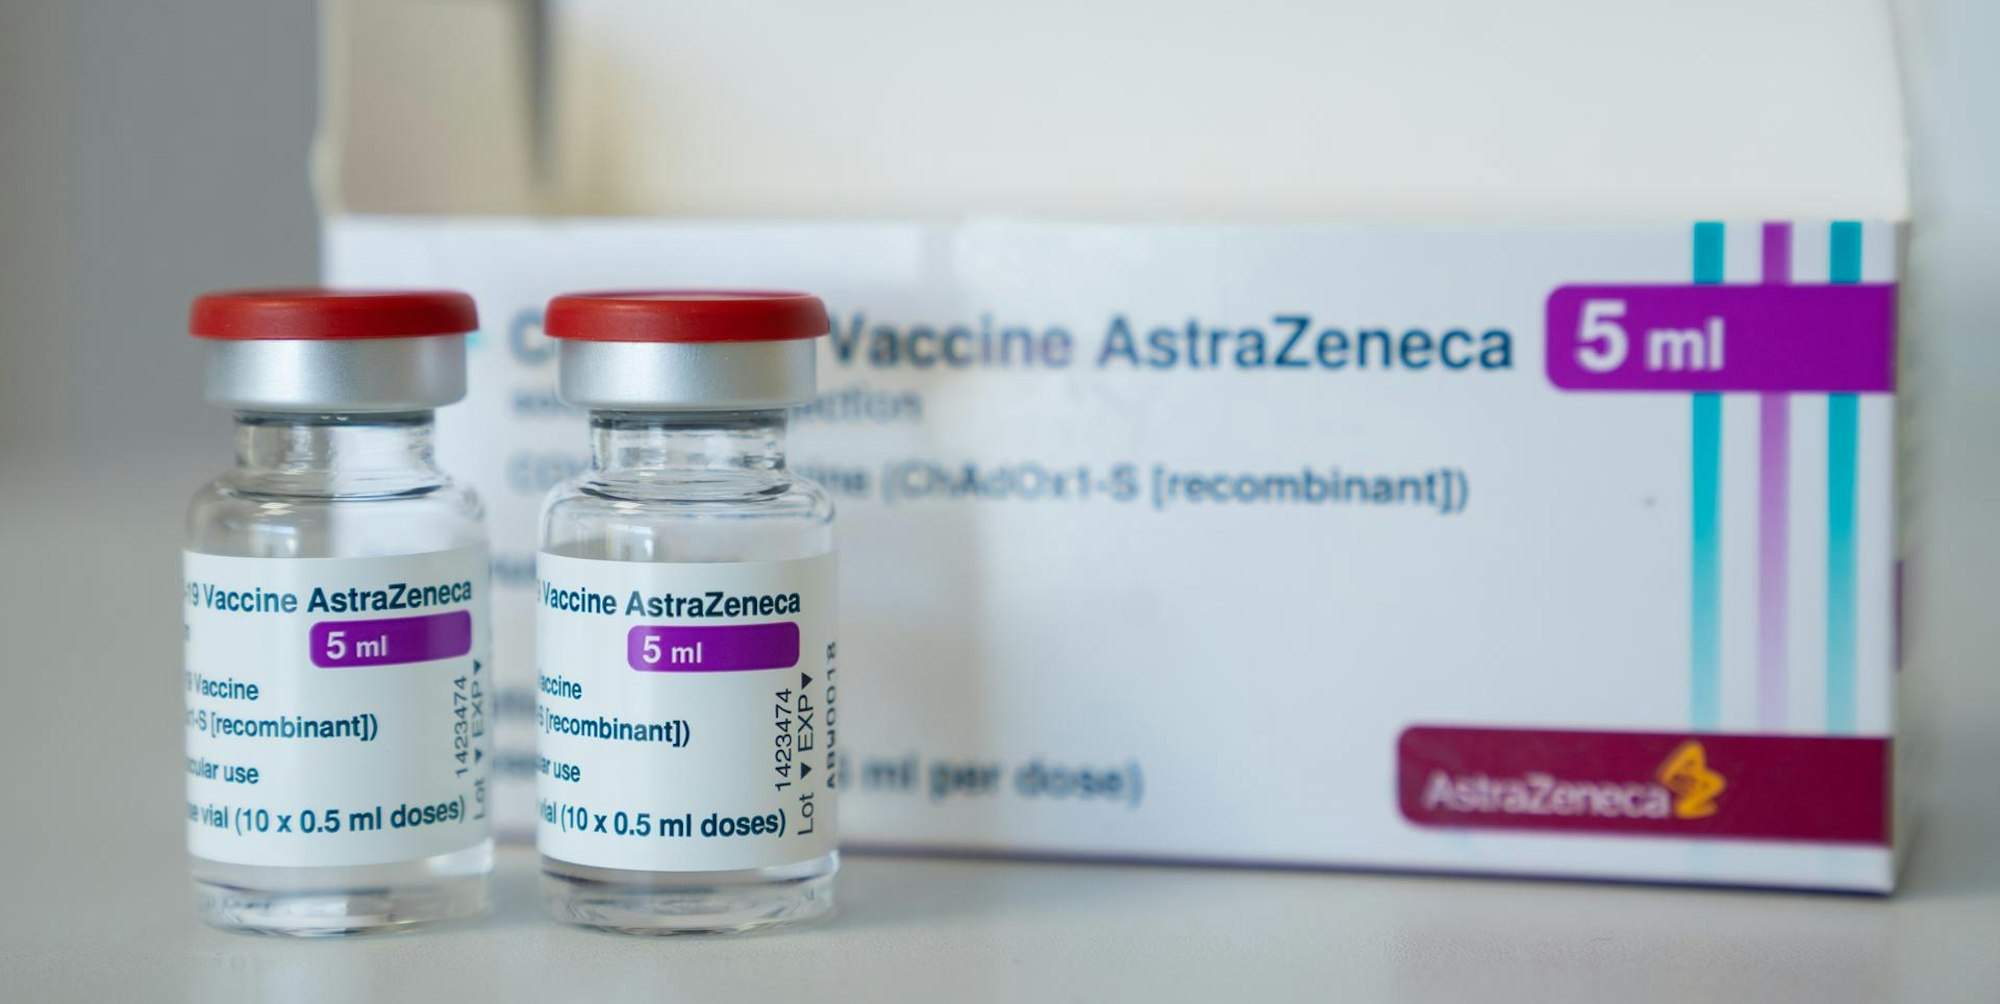 Impfstoff Astrazeneca